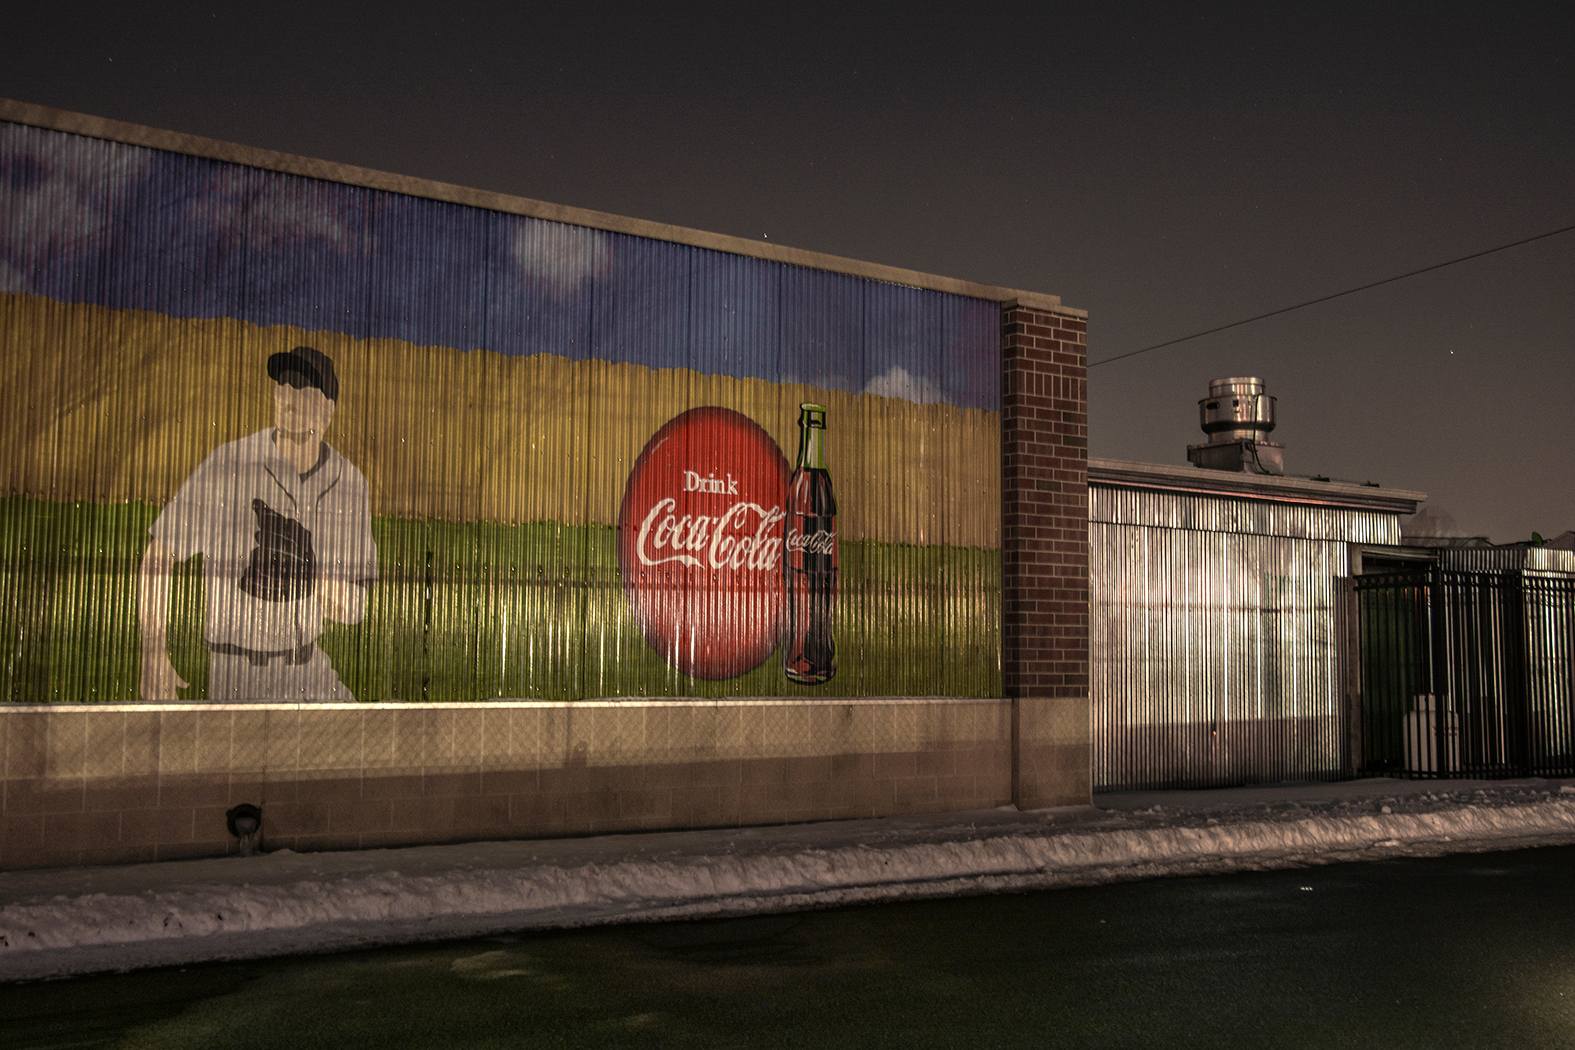 Behind Coca-Cola Stadium